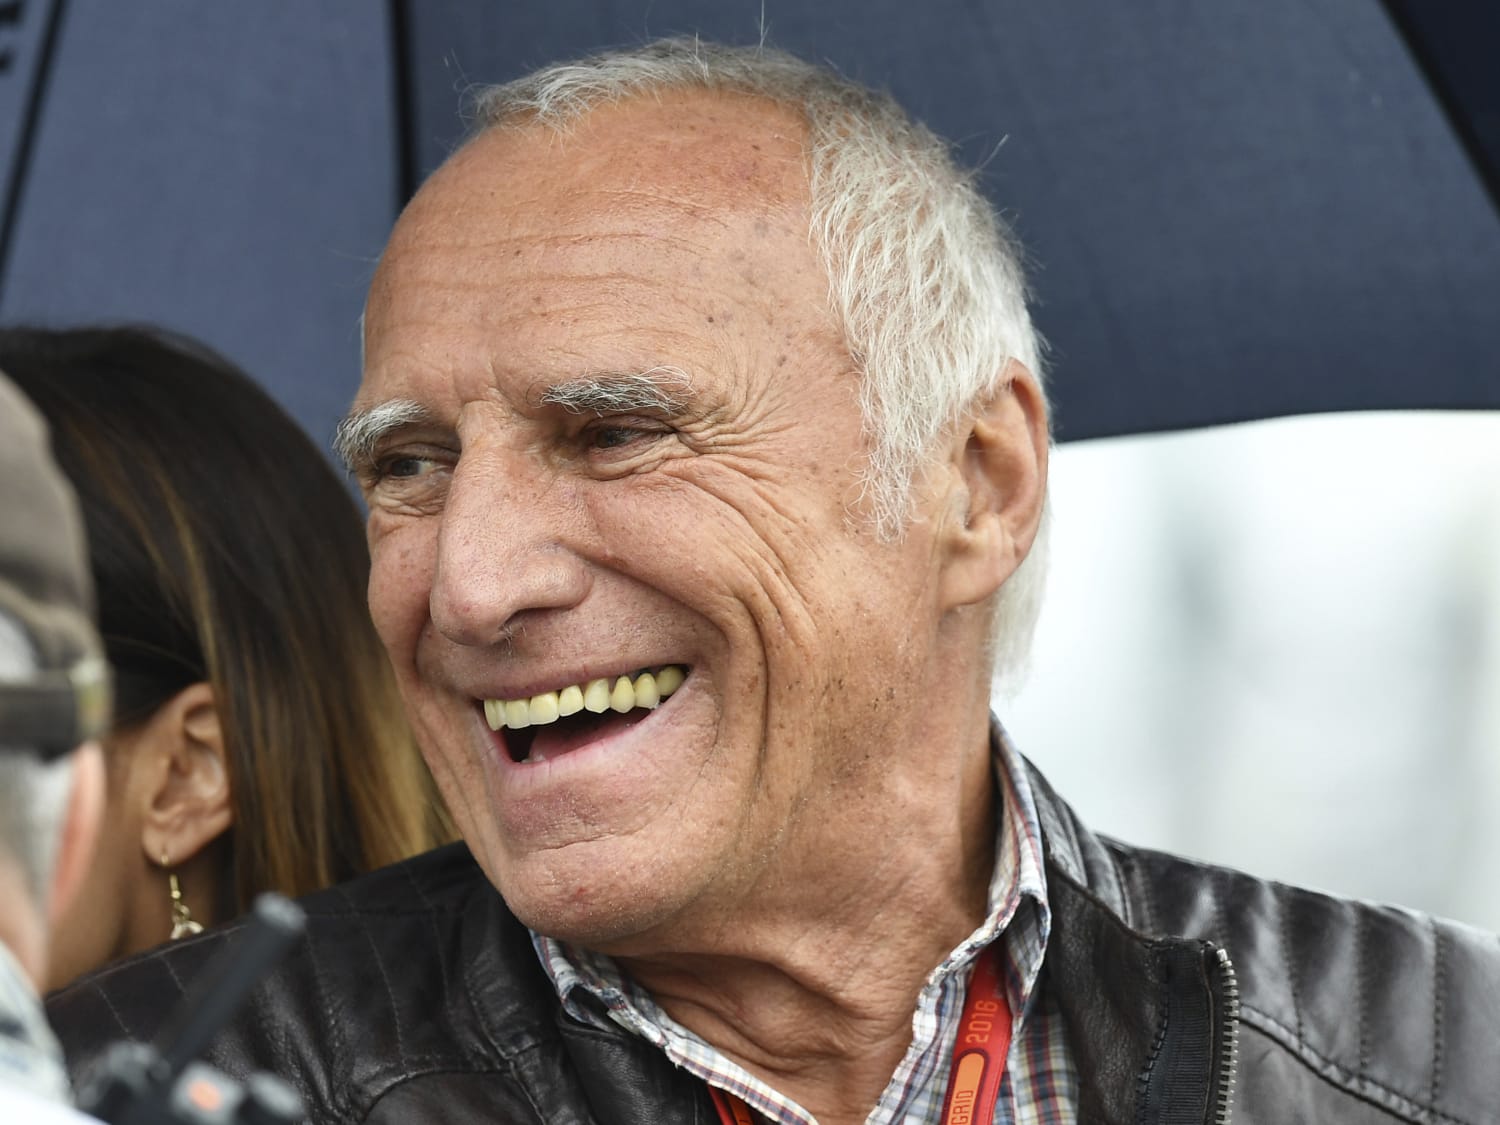 Påhængsmotor dobbelt kaptajn Dietrich Mateschitz, co-founder of Red Bull and F1 team owner, dies at 78